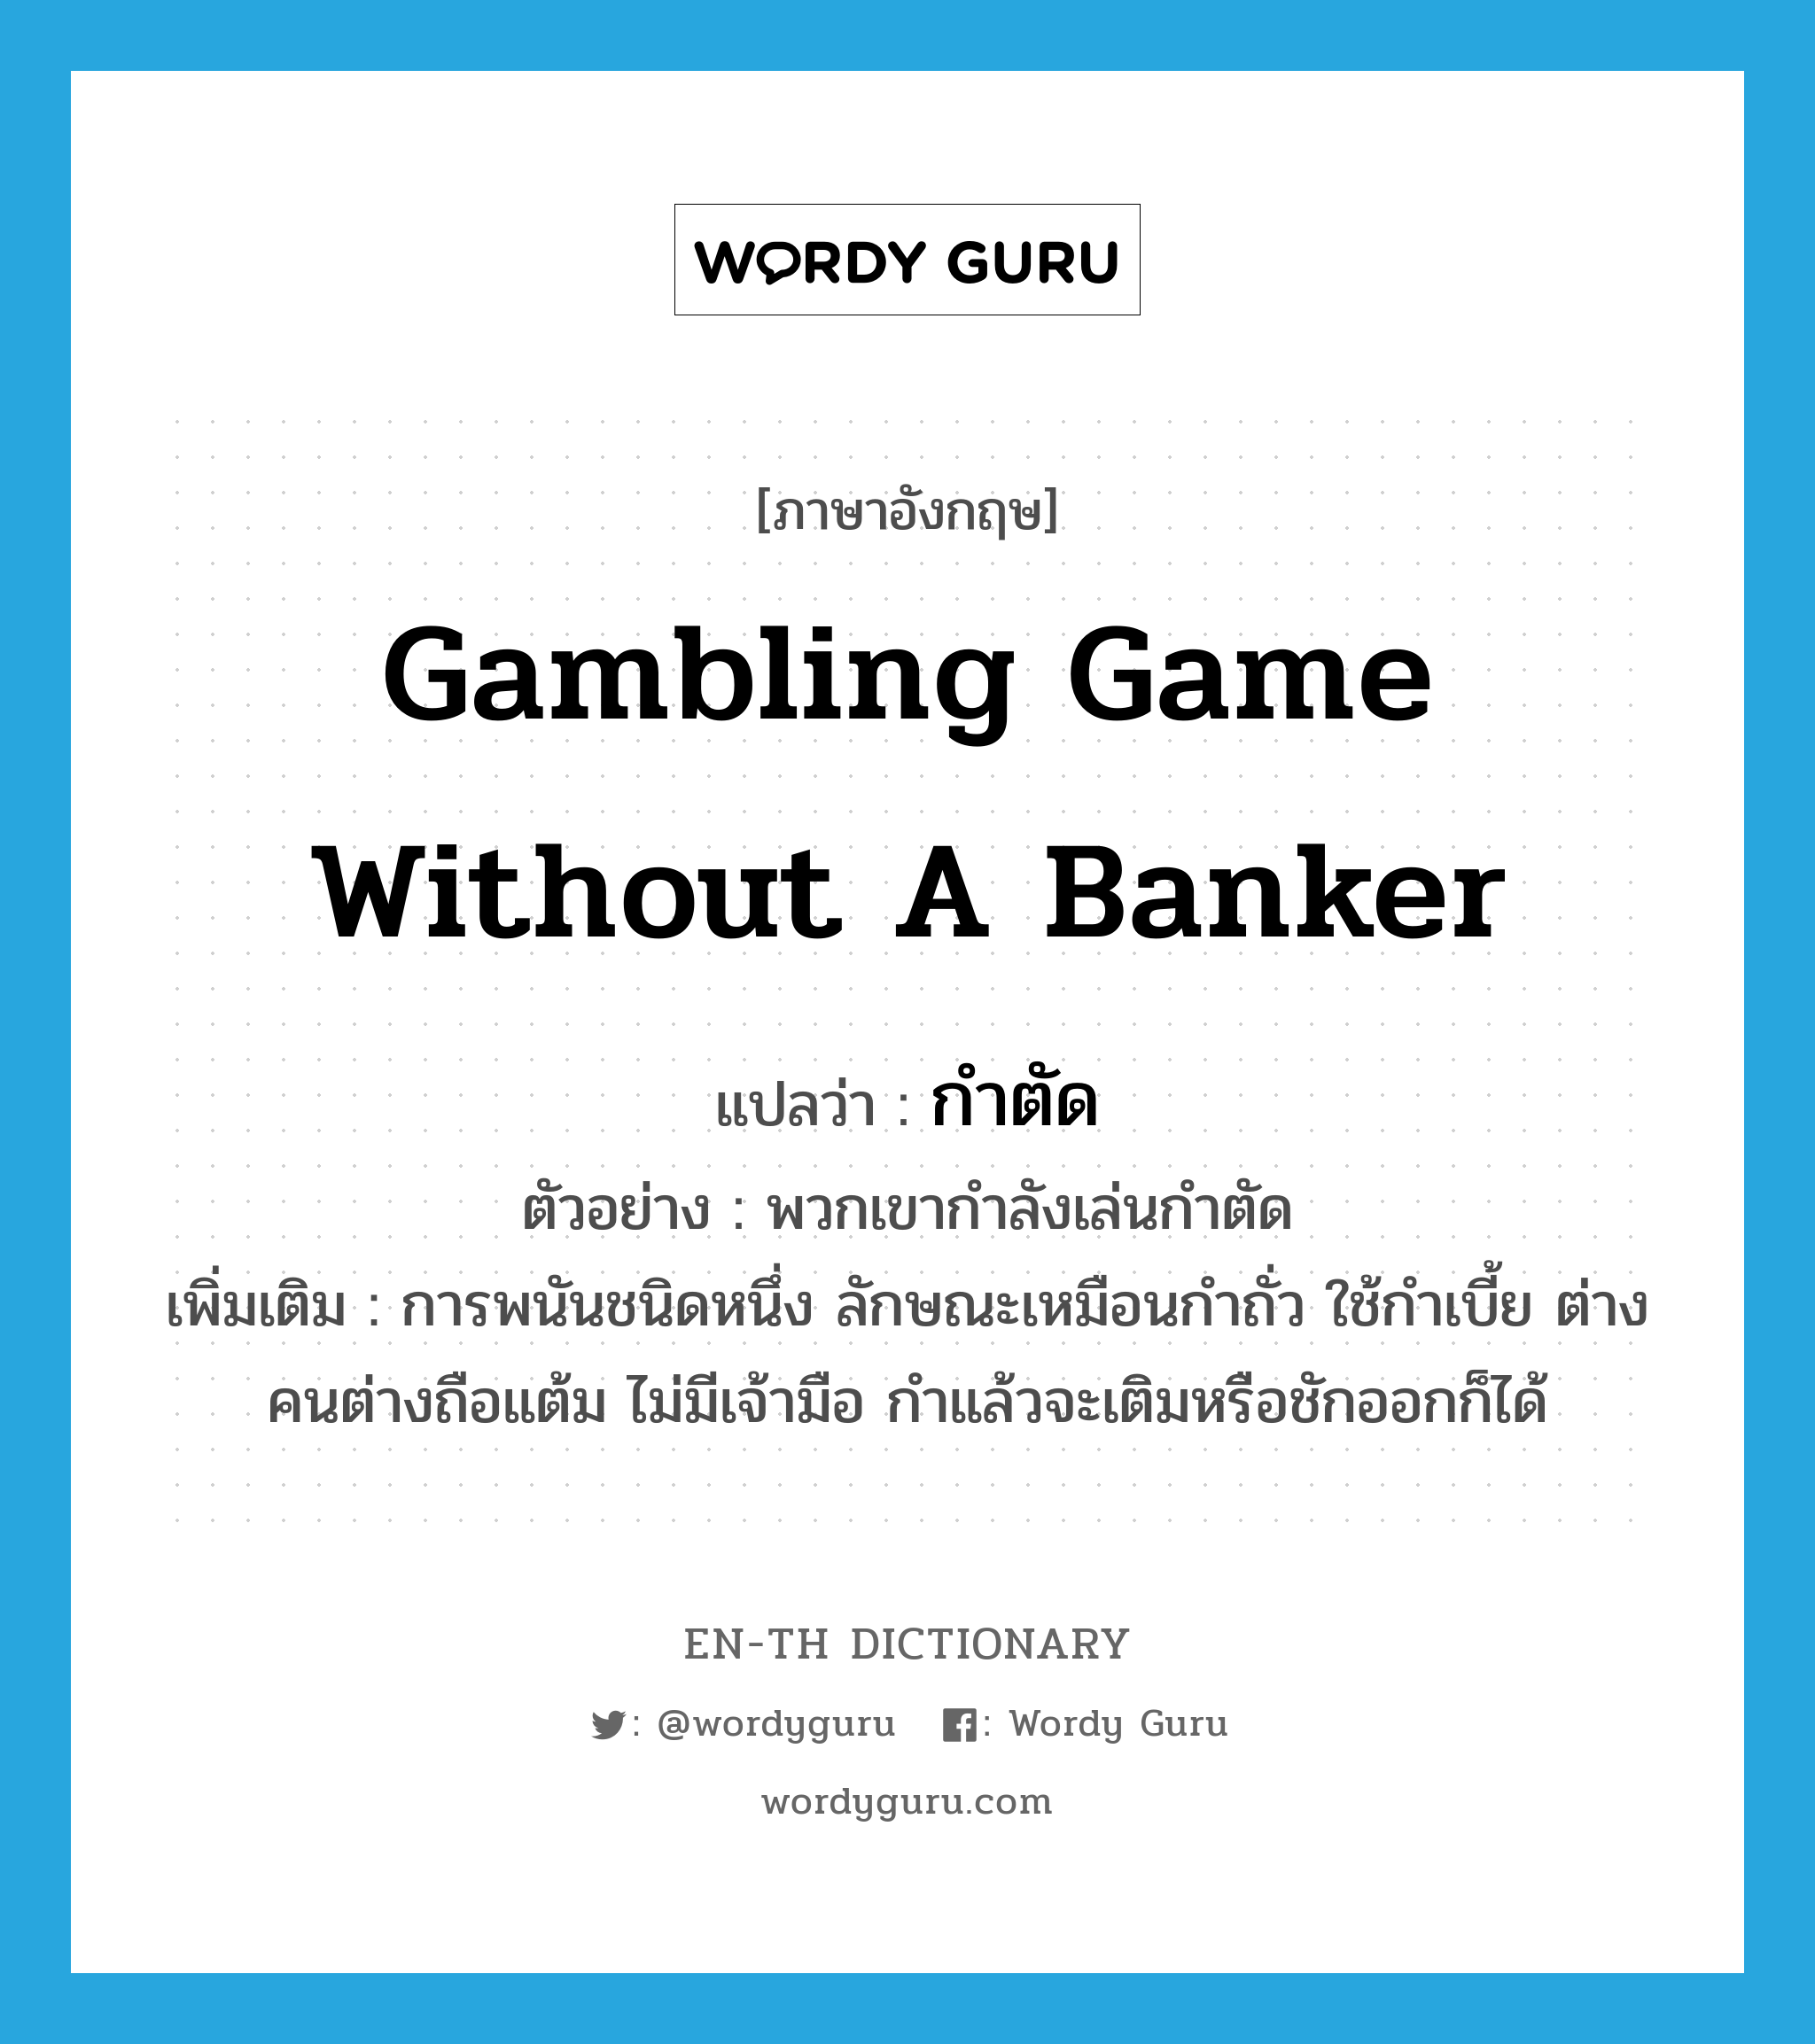 gambling game without a banker แปลว่า?, คำศัพท์ภาษาอังกฤษ gambling game without a banker แปลว่า กำตัด ประเภท N ตัวอย่าง พวกเขากำลังเล่นกำตัด เพิ่มเติม การพนันชนิดหนึ่ง ลักษณะเหมือนกำถั่ว ใช้กำเบี้ย ต่างคนต่างถือแต้ม ไม่มีเจ้ามือ กำแล้วจะเติมหรือชักออกก็ได้ หมวด N